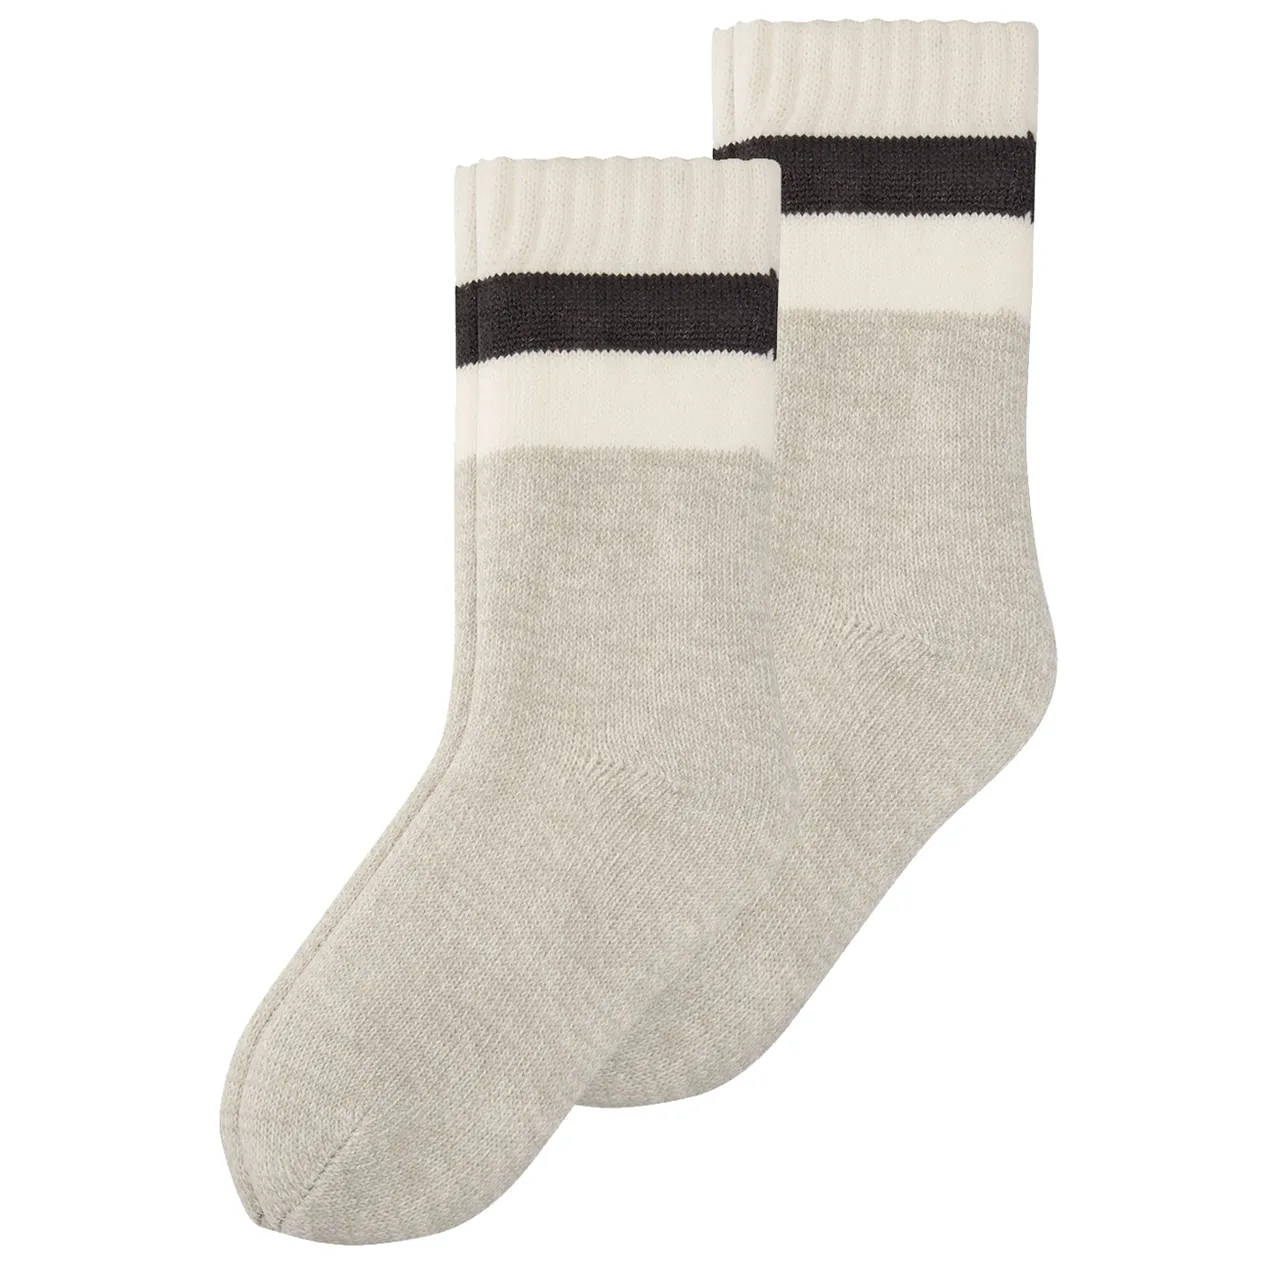 S.Oliver Damen Fashion Home-socks 2er Pack 37-38 39-40 41-42